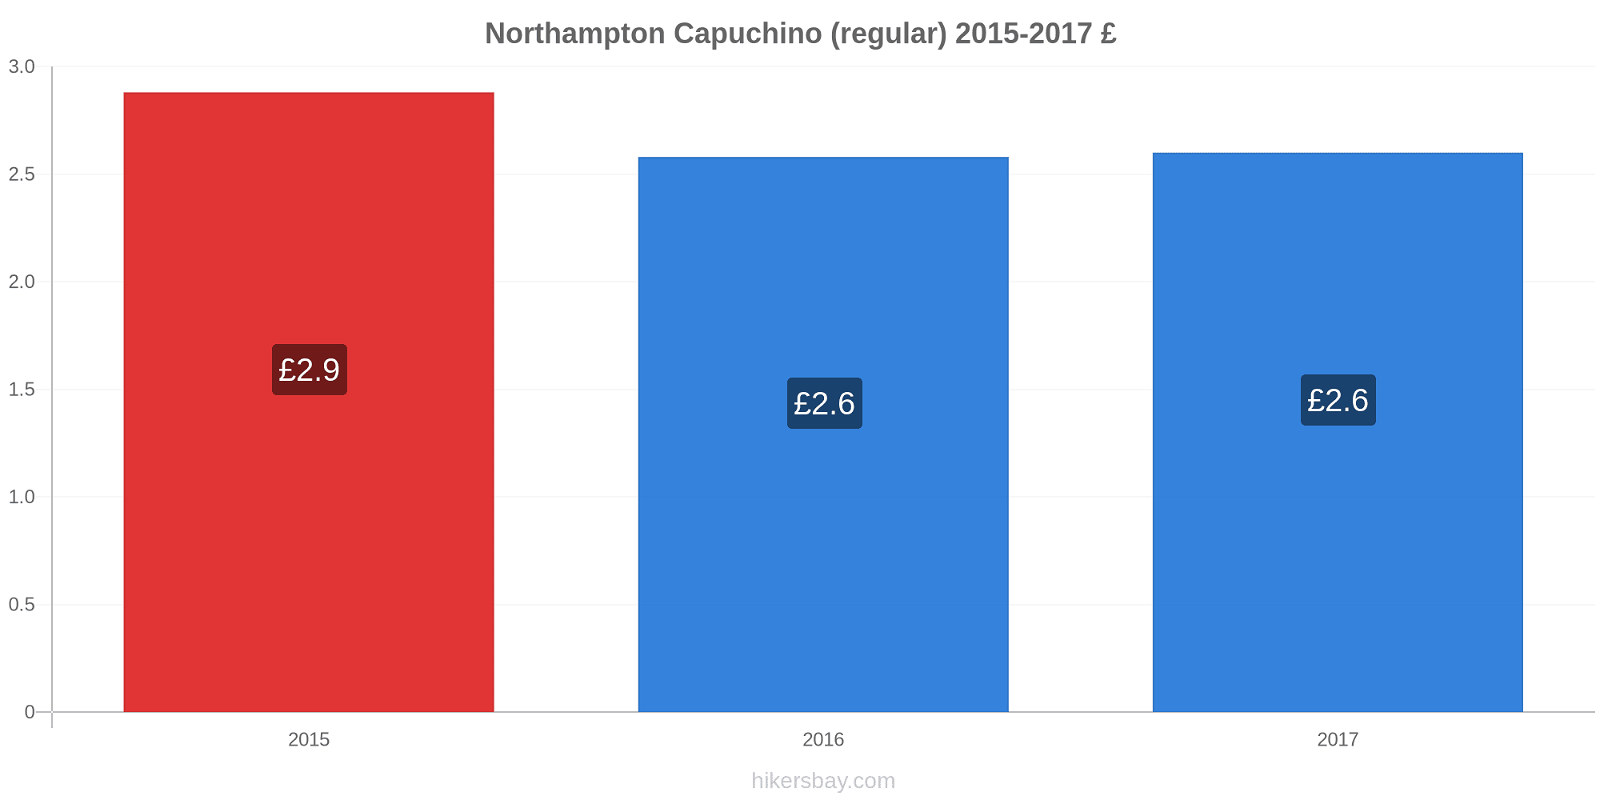 Northampton cambios de precios Capuchino (regular) hikersbay.com